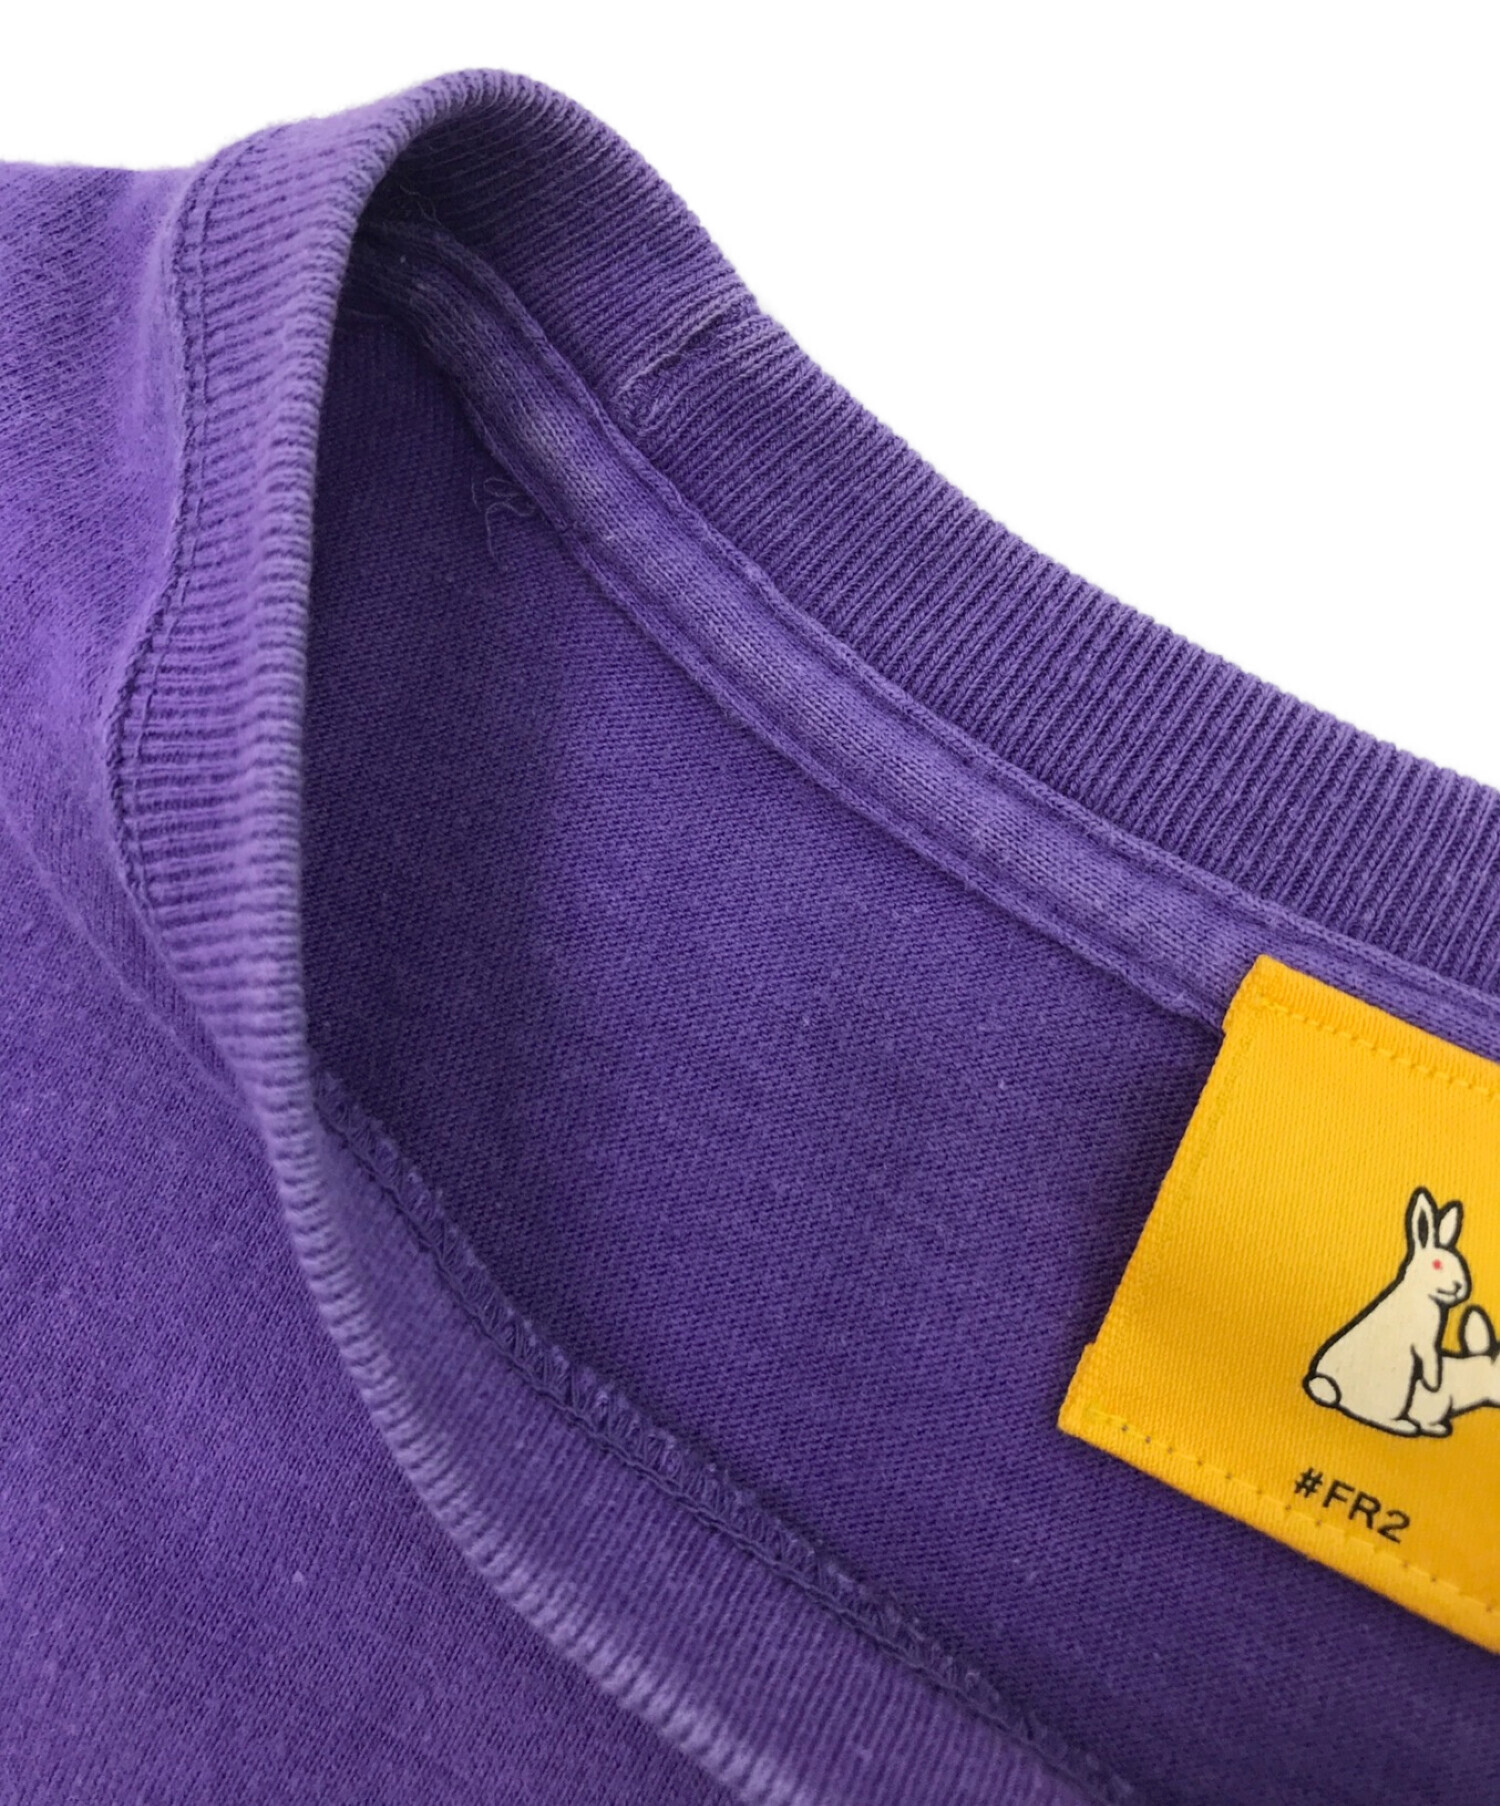 ホットセール 【希少デザイン】FR2 デカプリント 半袖 Tシャツ 紫